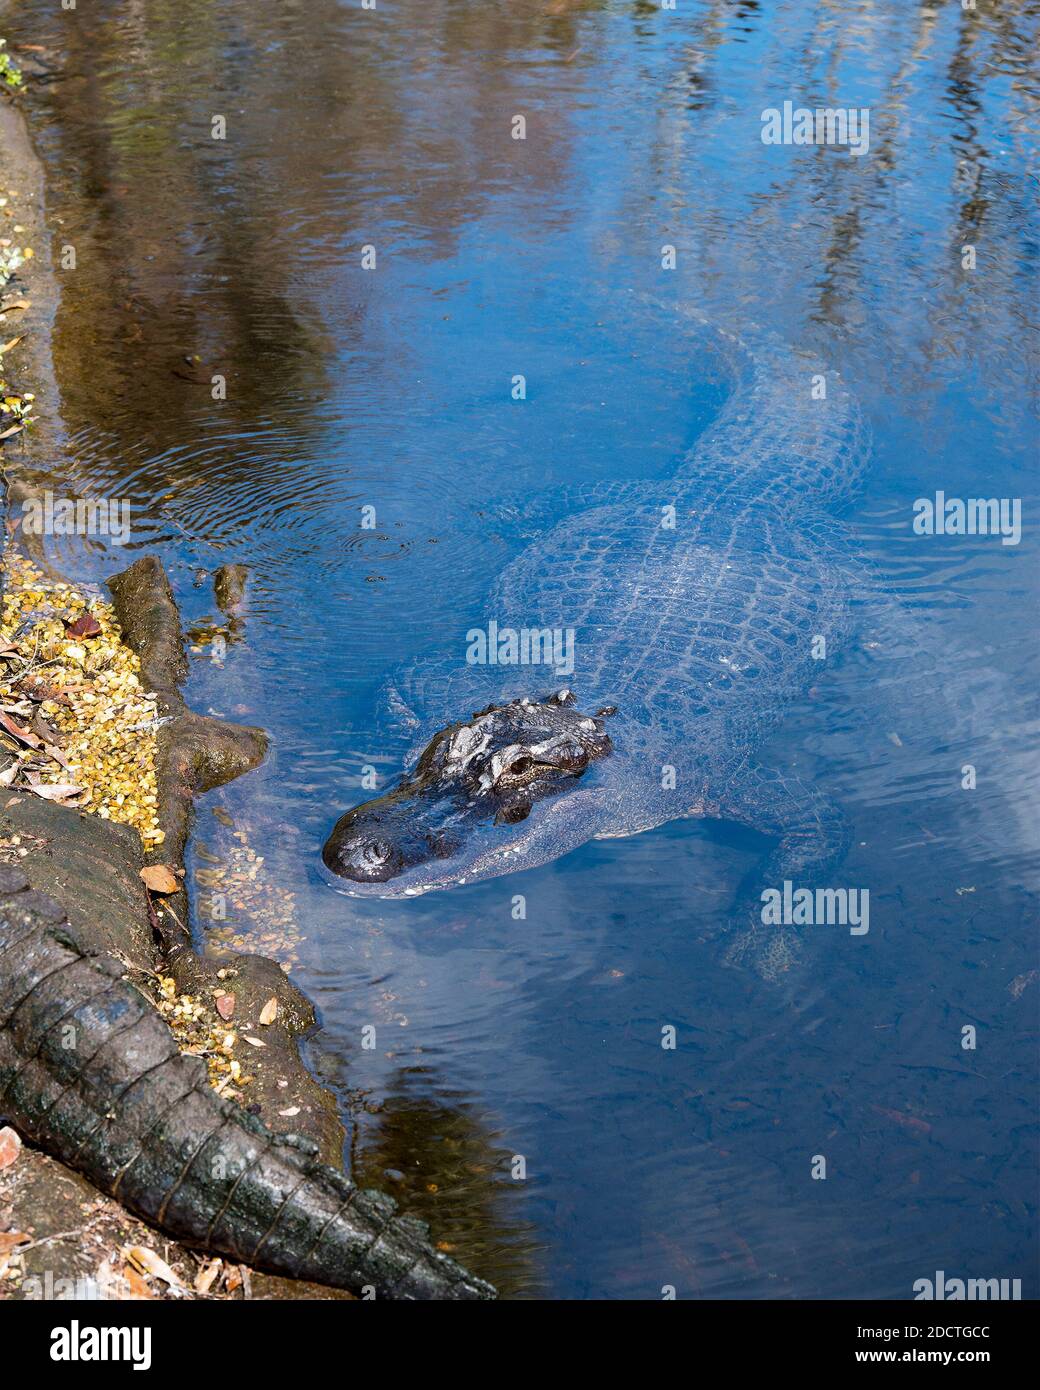 Alligator close-up-Profil Ansicht, Ruhe im Wasser zeigt seinen Körper, Kopf, Zähne, Beine, Nagel, in seinem Lebensraum und Umgebung . Alligatorfoto. Stockfoto